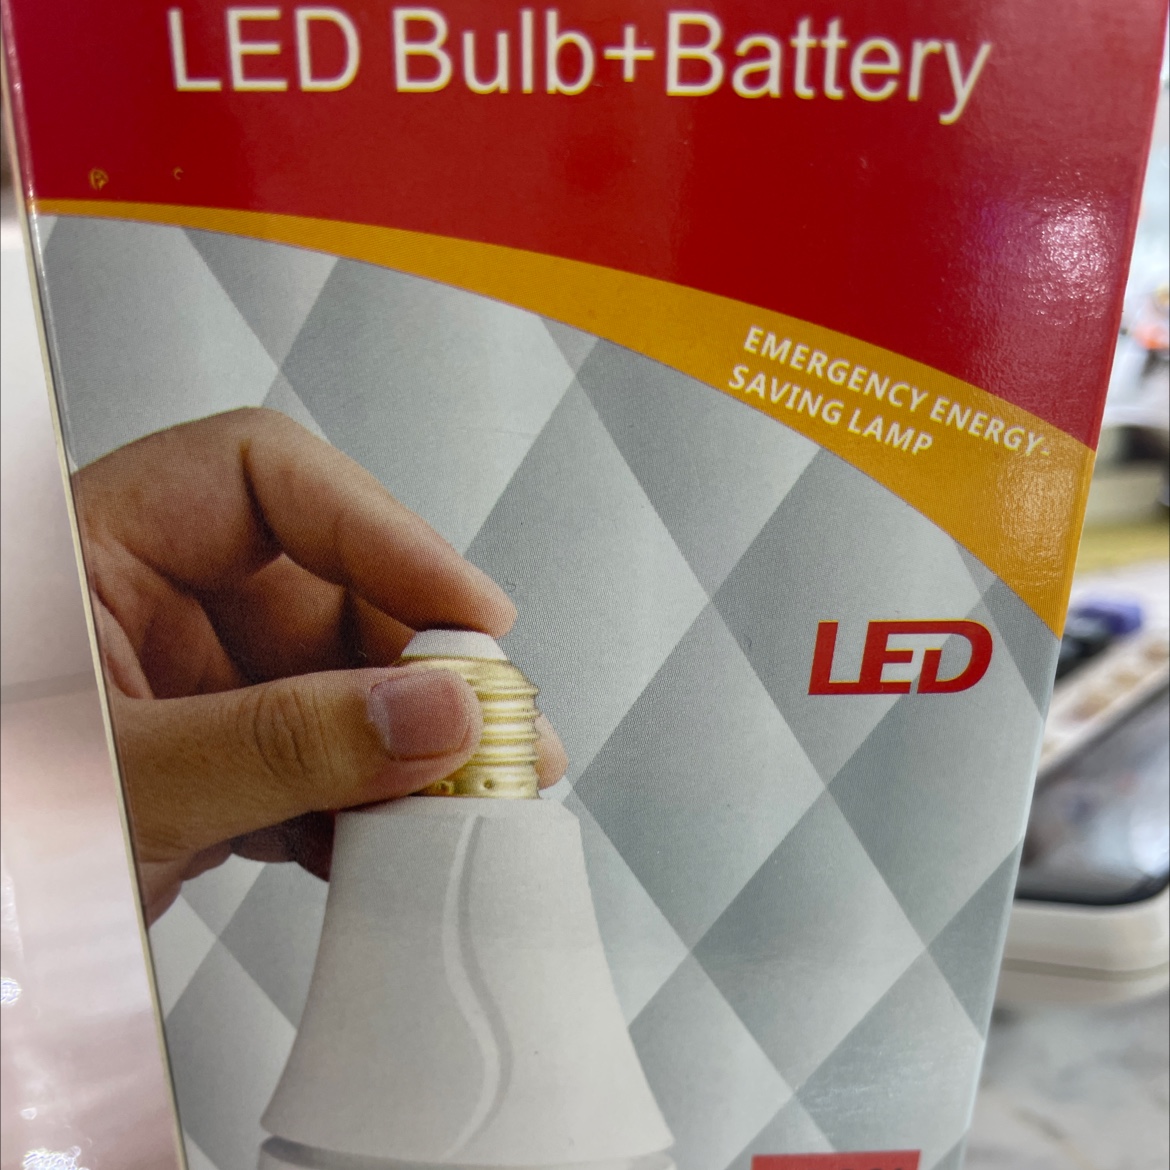 12w LED Bulb +Battery图